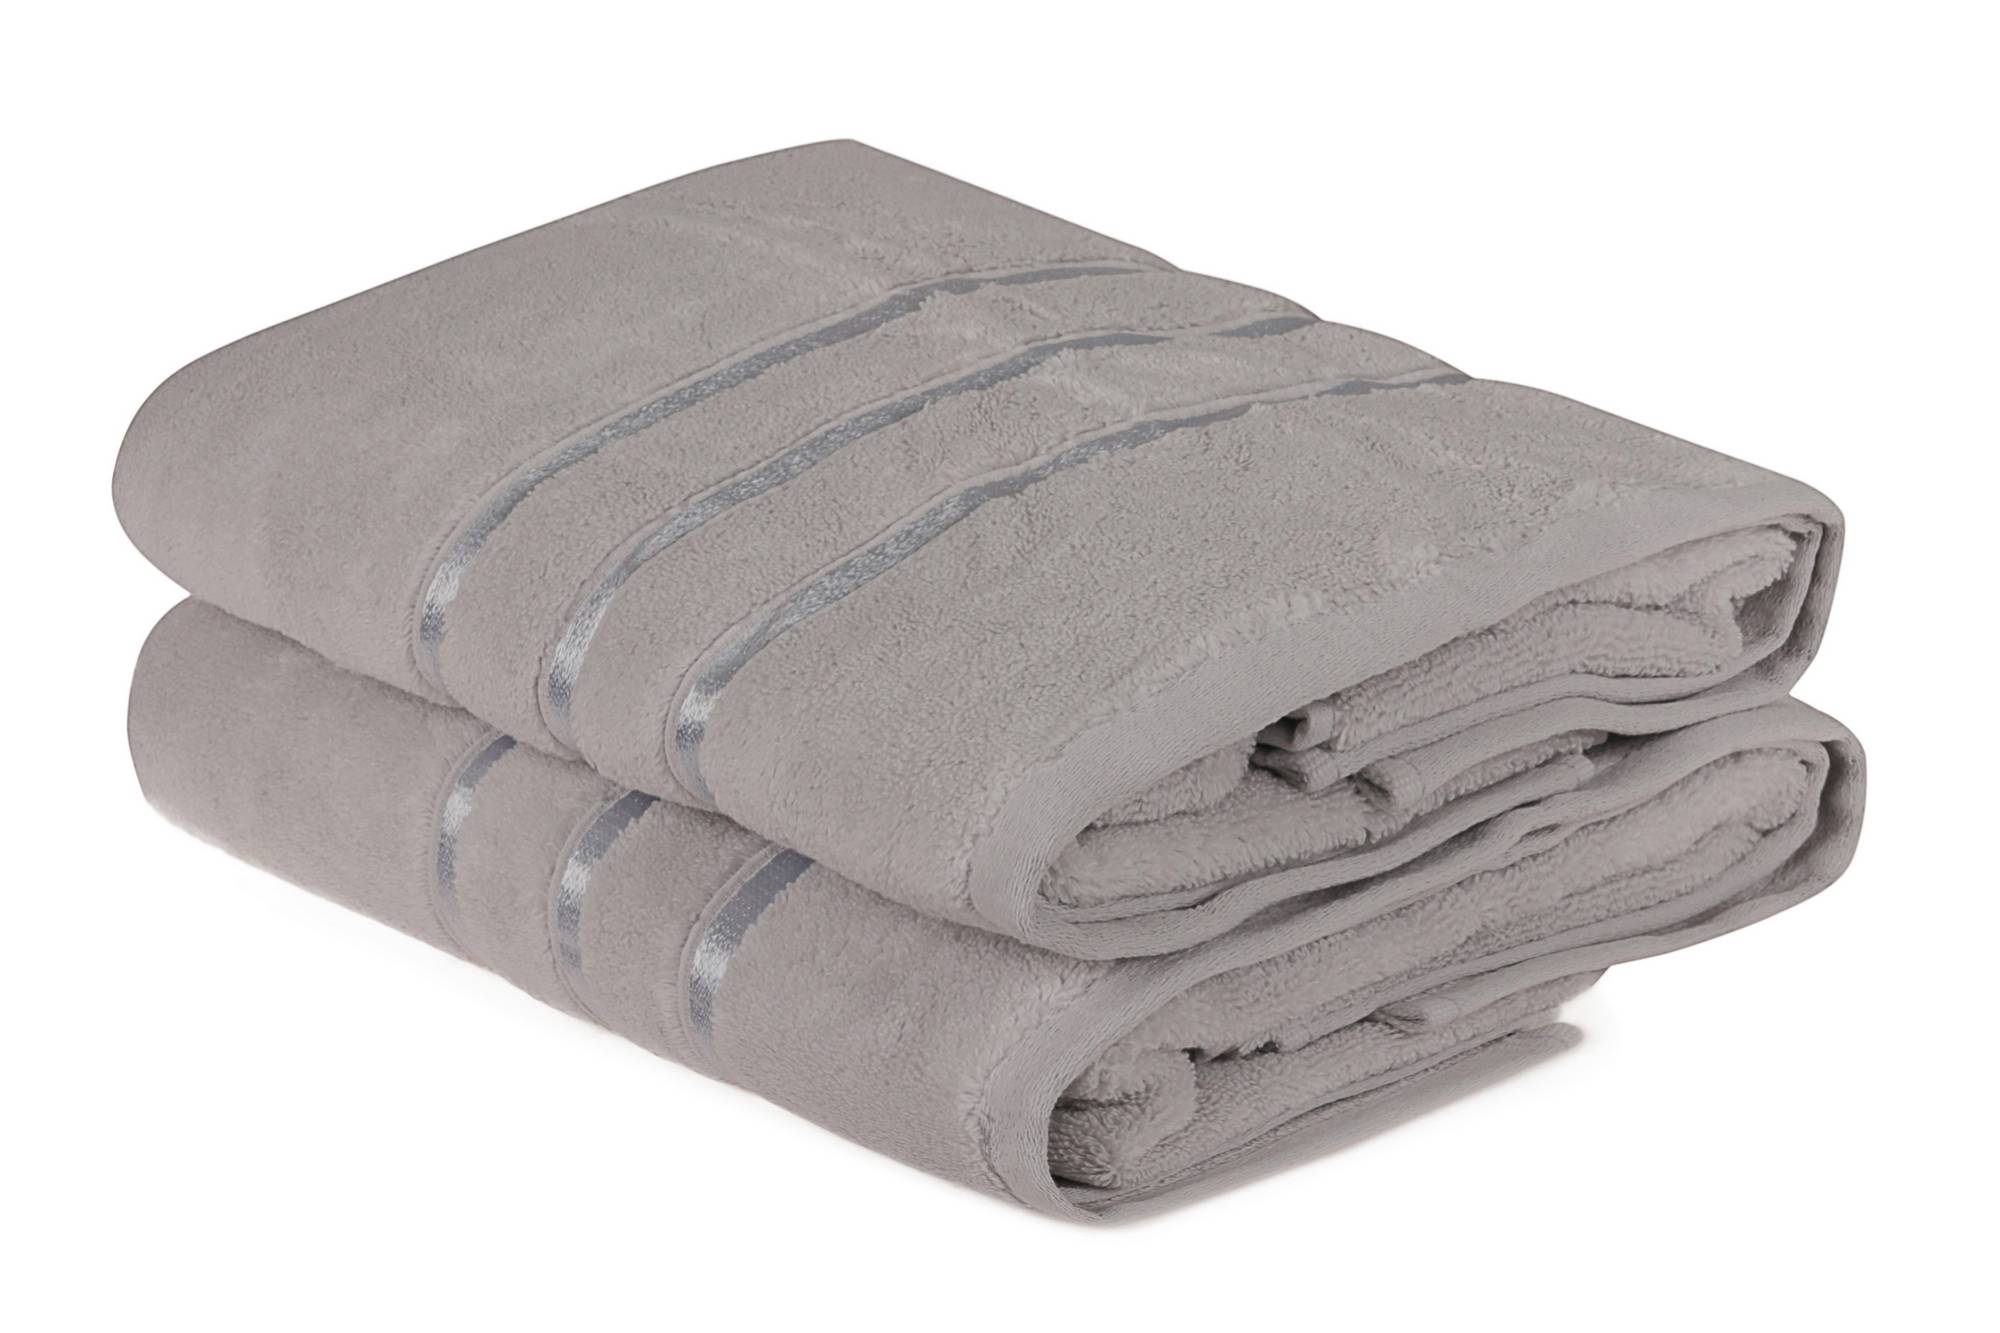 Lot de 2 serviettes de bain trois liteaux texture pelucheuse Vitta 70x140cm 100% Coton Gris clair